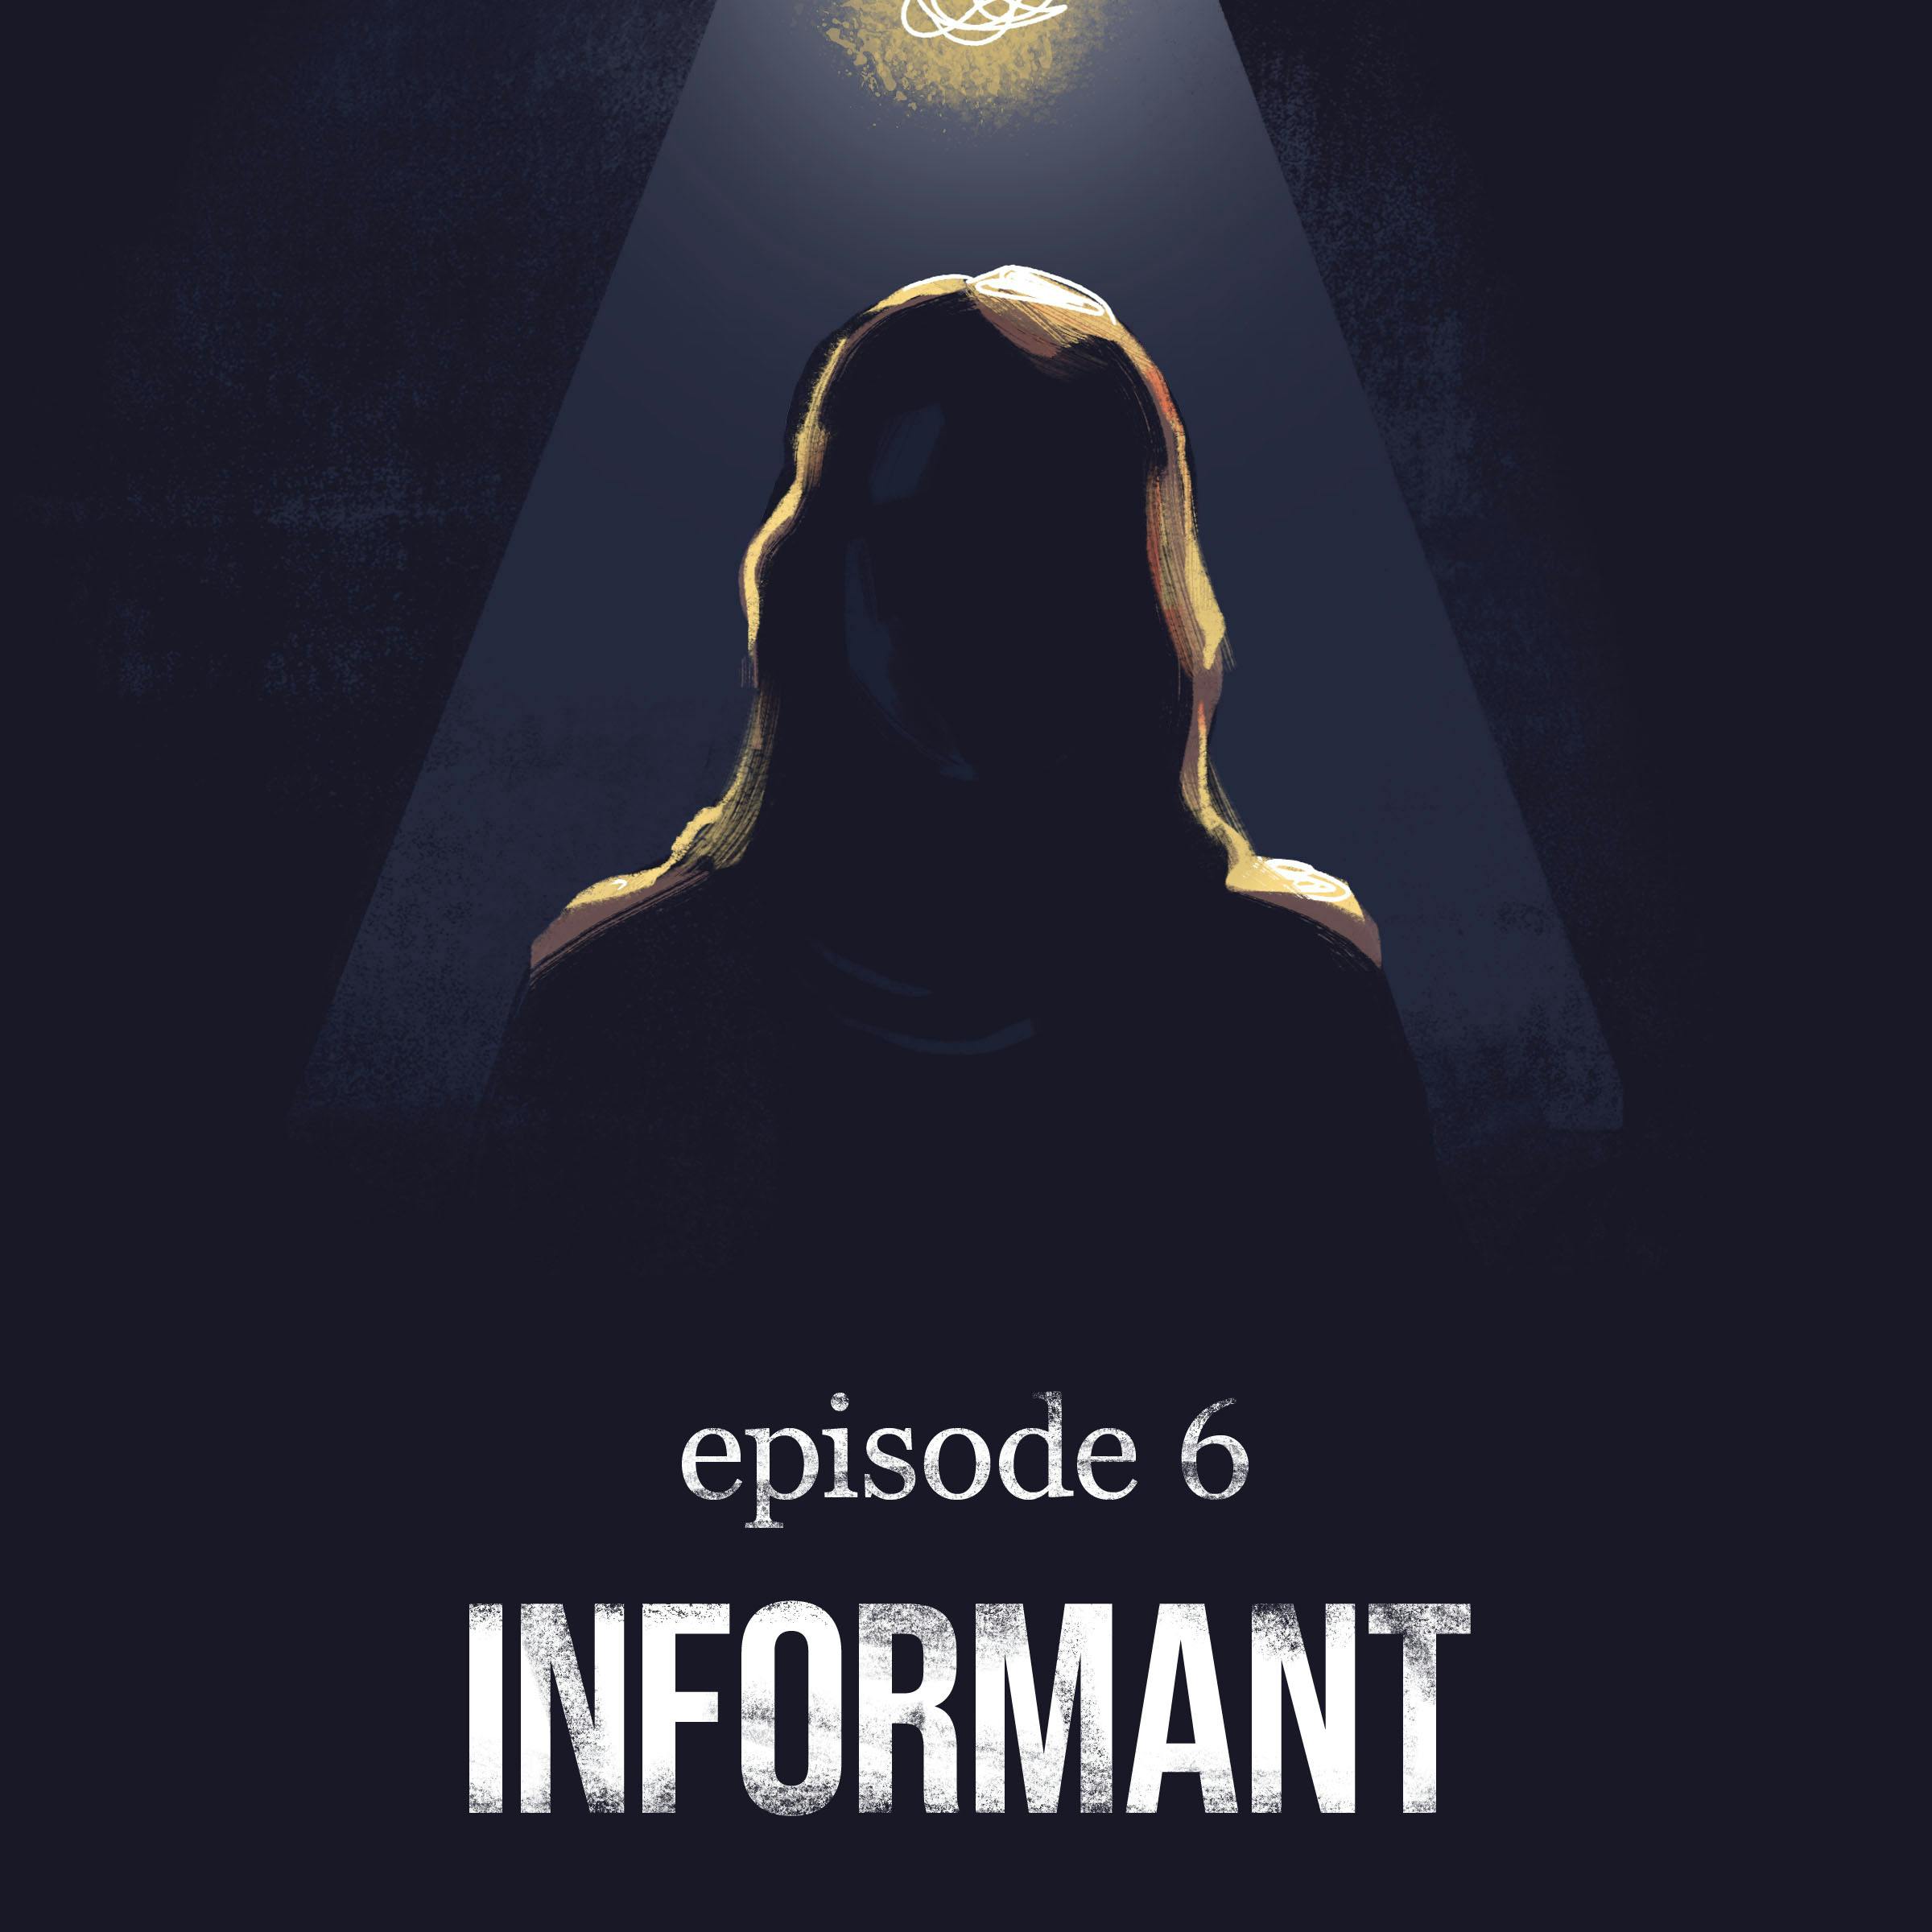 Informant | 6